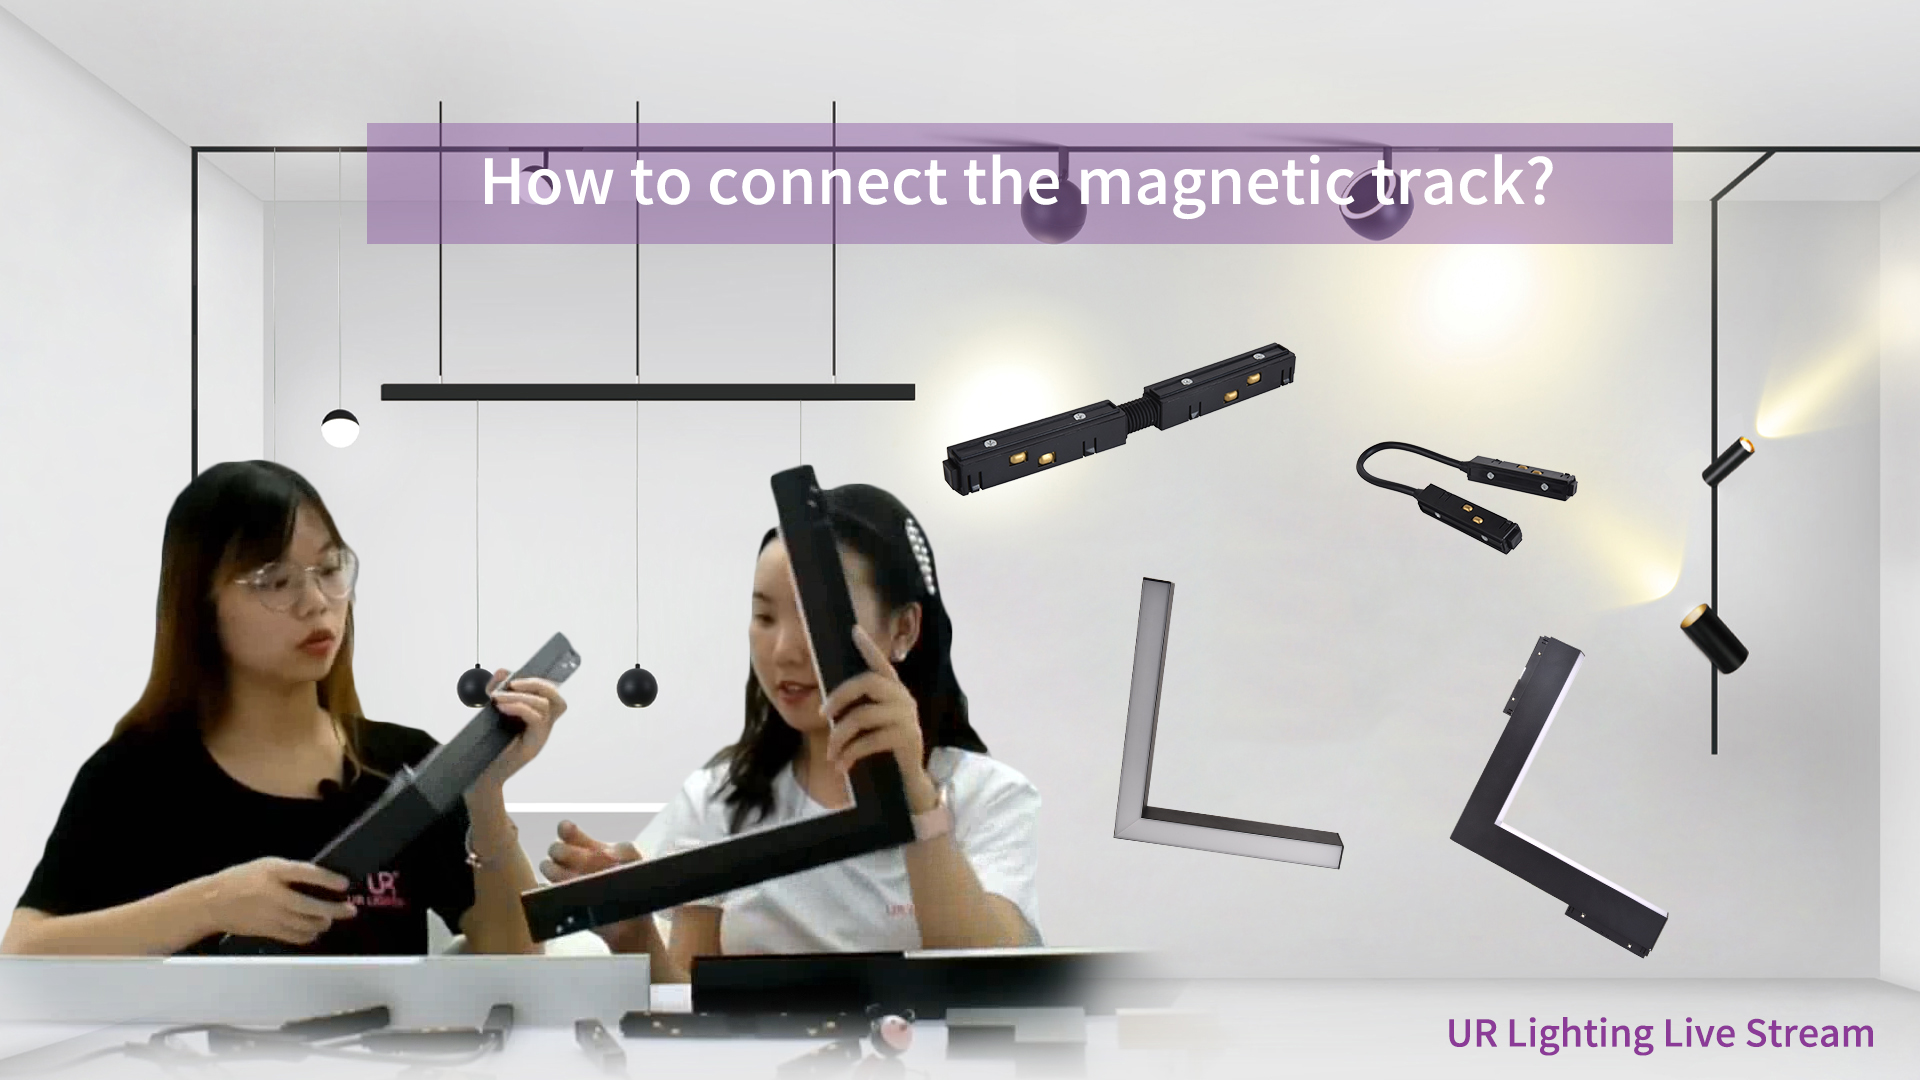 ¿Cómo conectar la pista magnética?